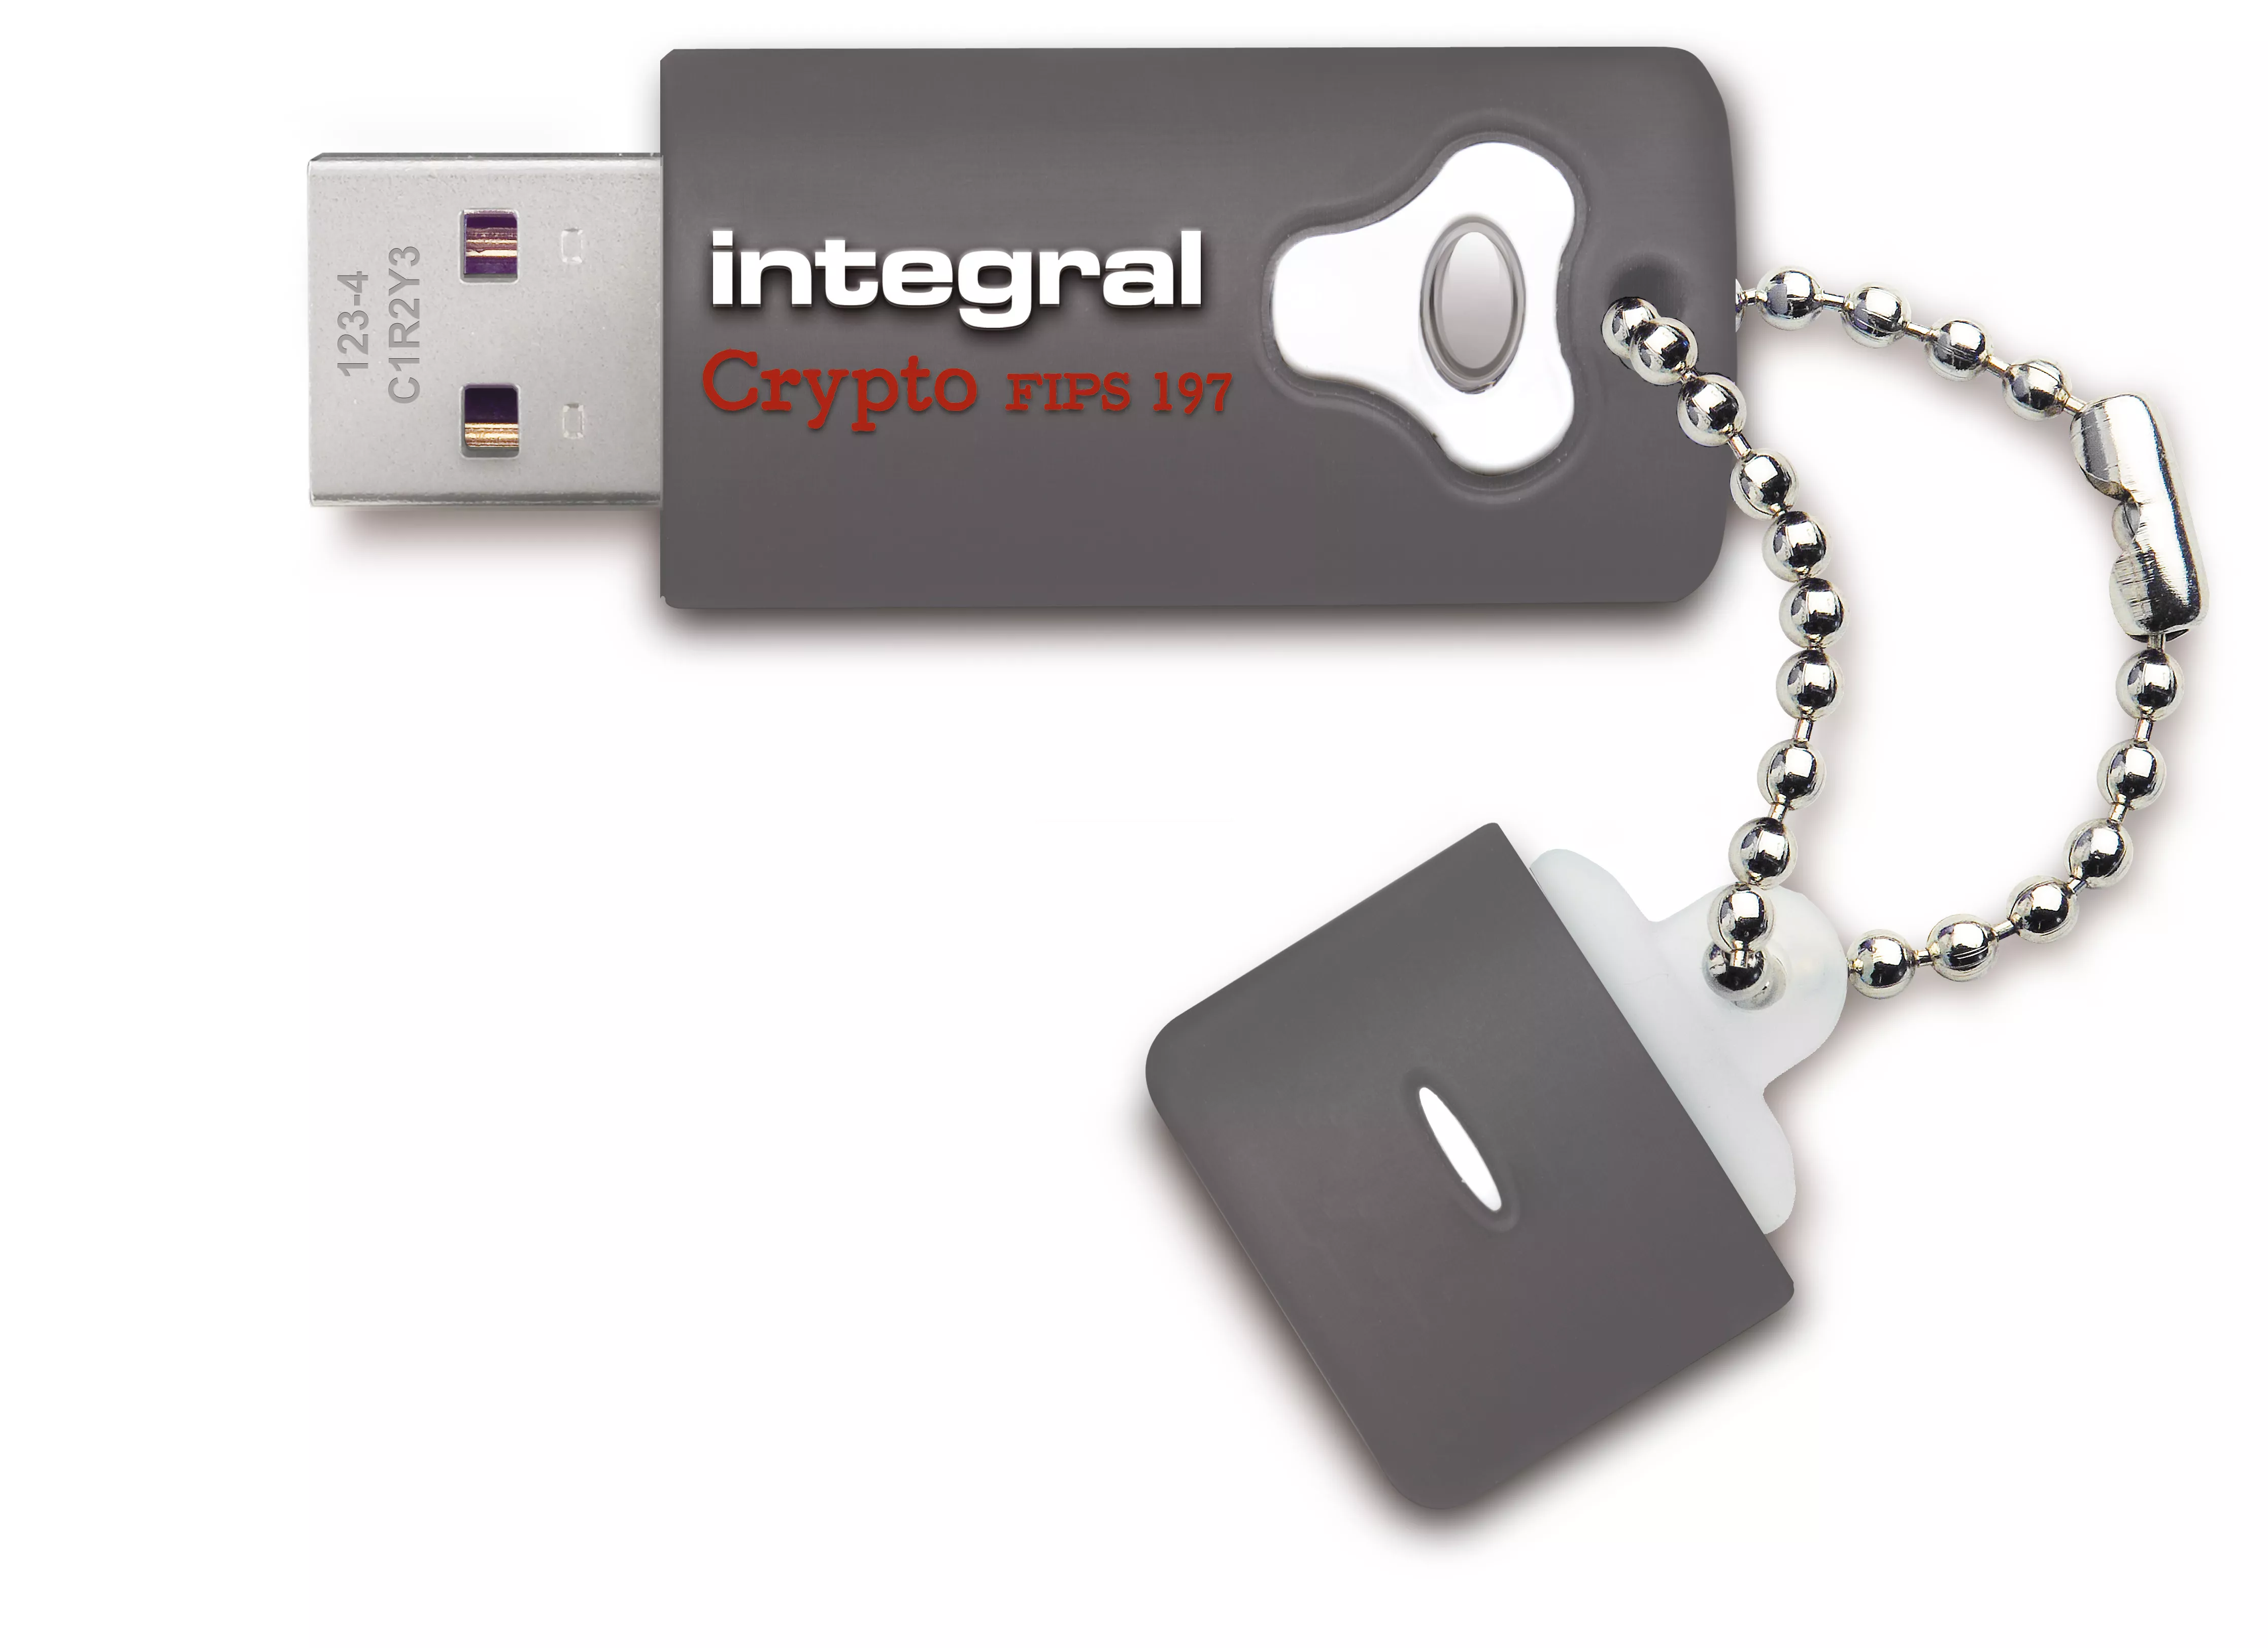 Achat Integral 32GB Crypto Drive FIPS 197 Encrypted USB 3.0 et autres produits de la marque Integral